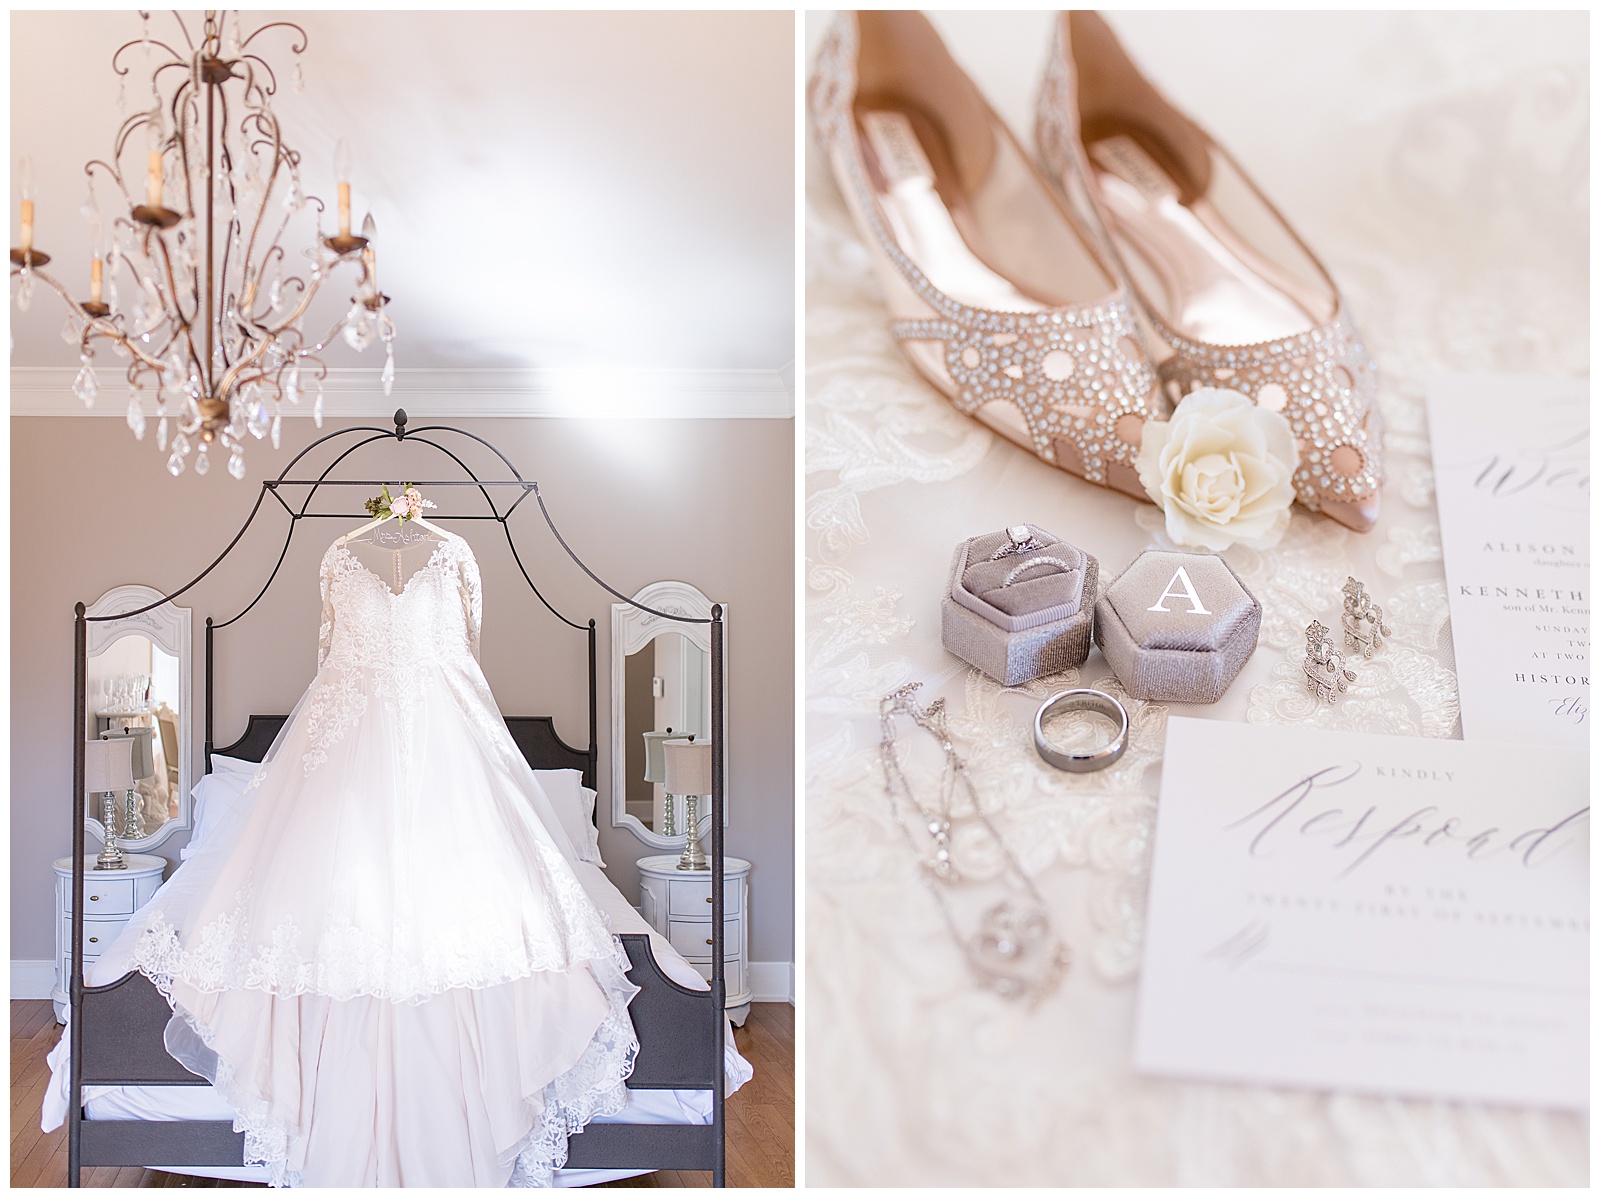 dress hanging off bed frame, bridal details